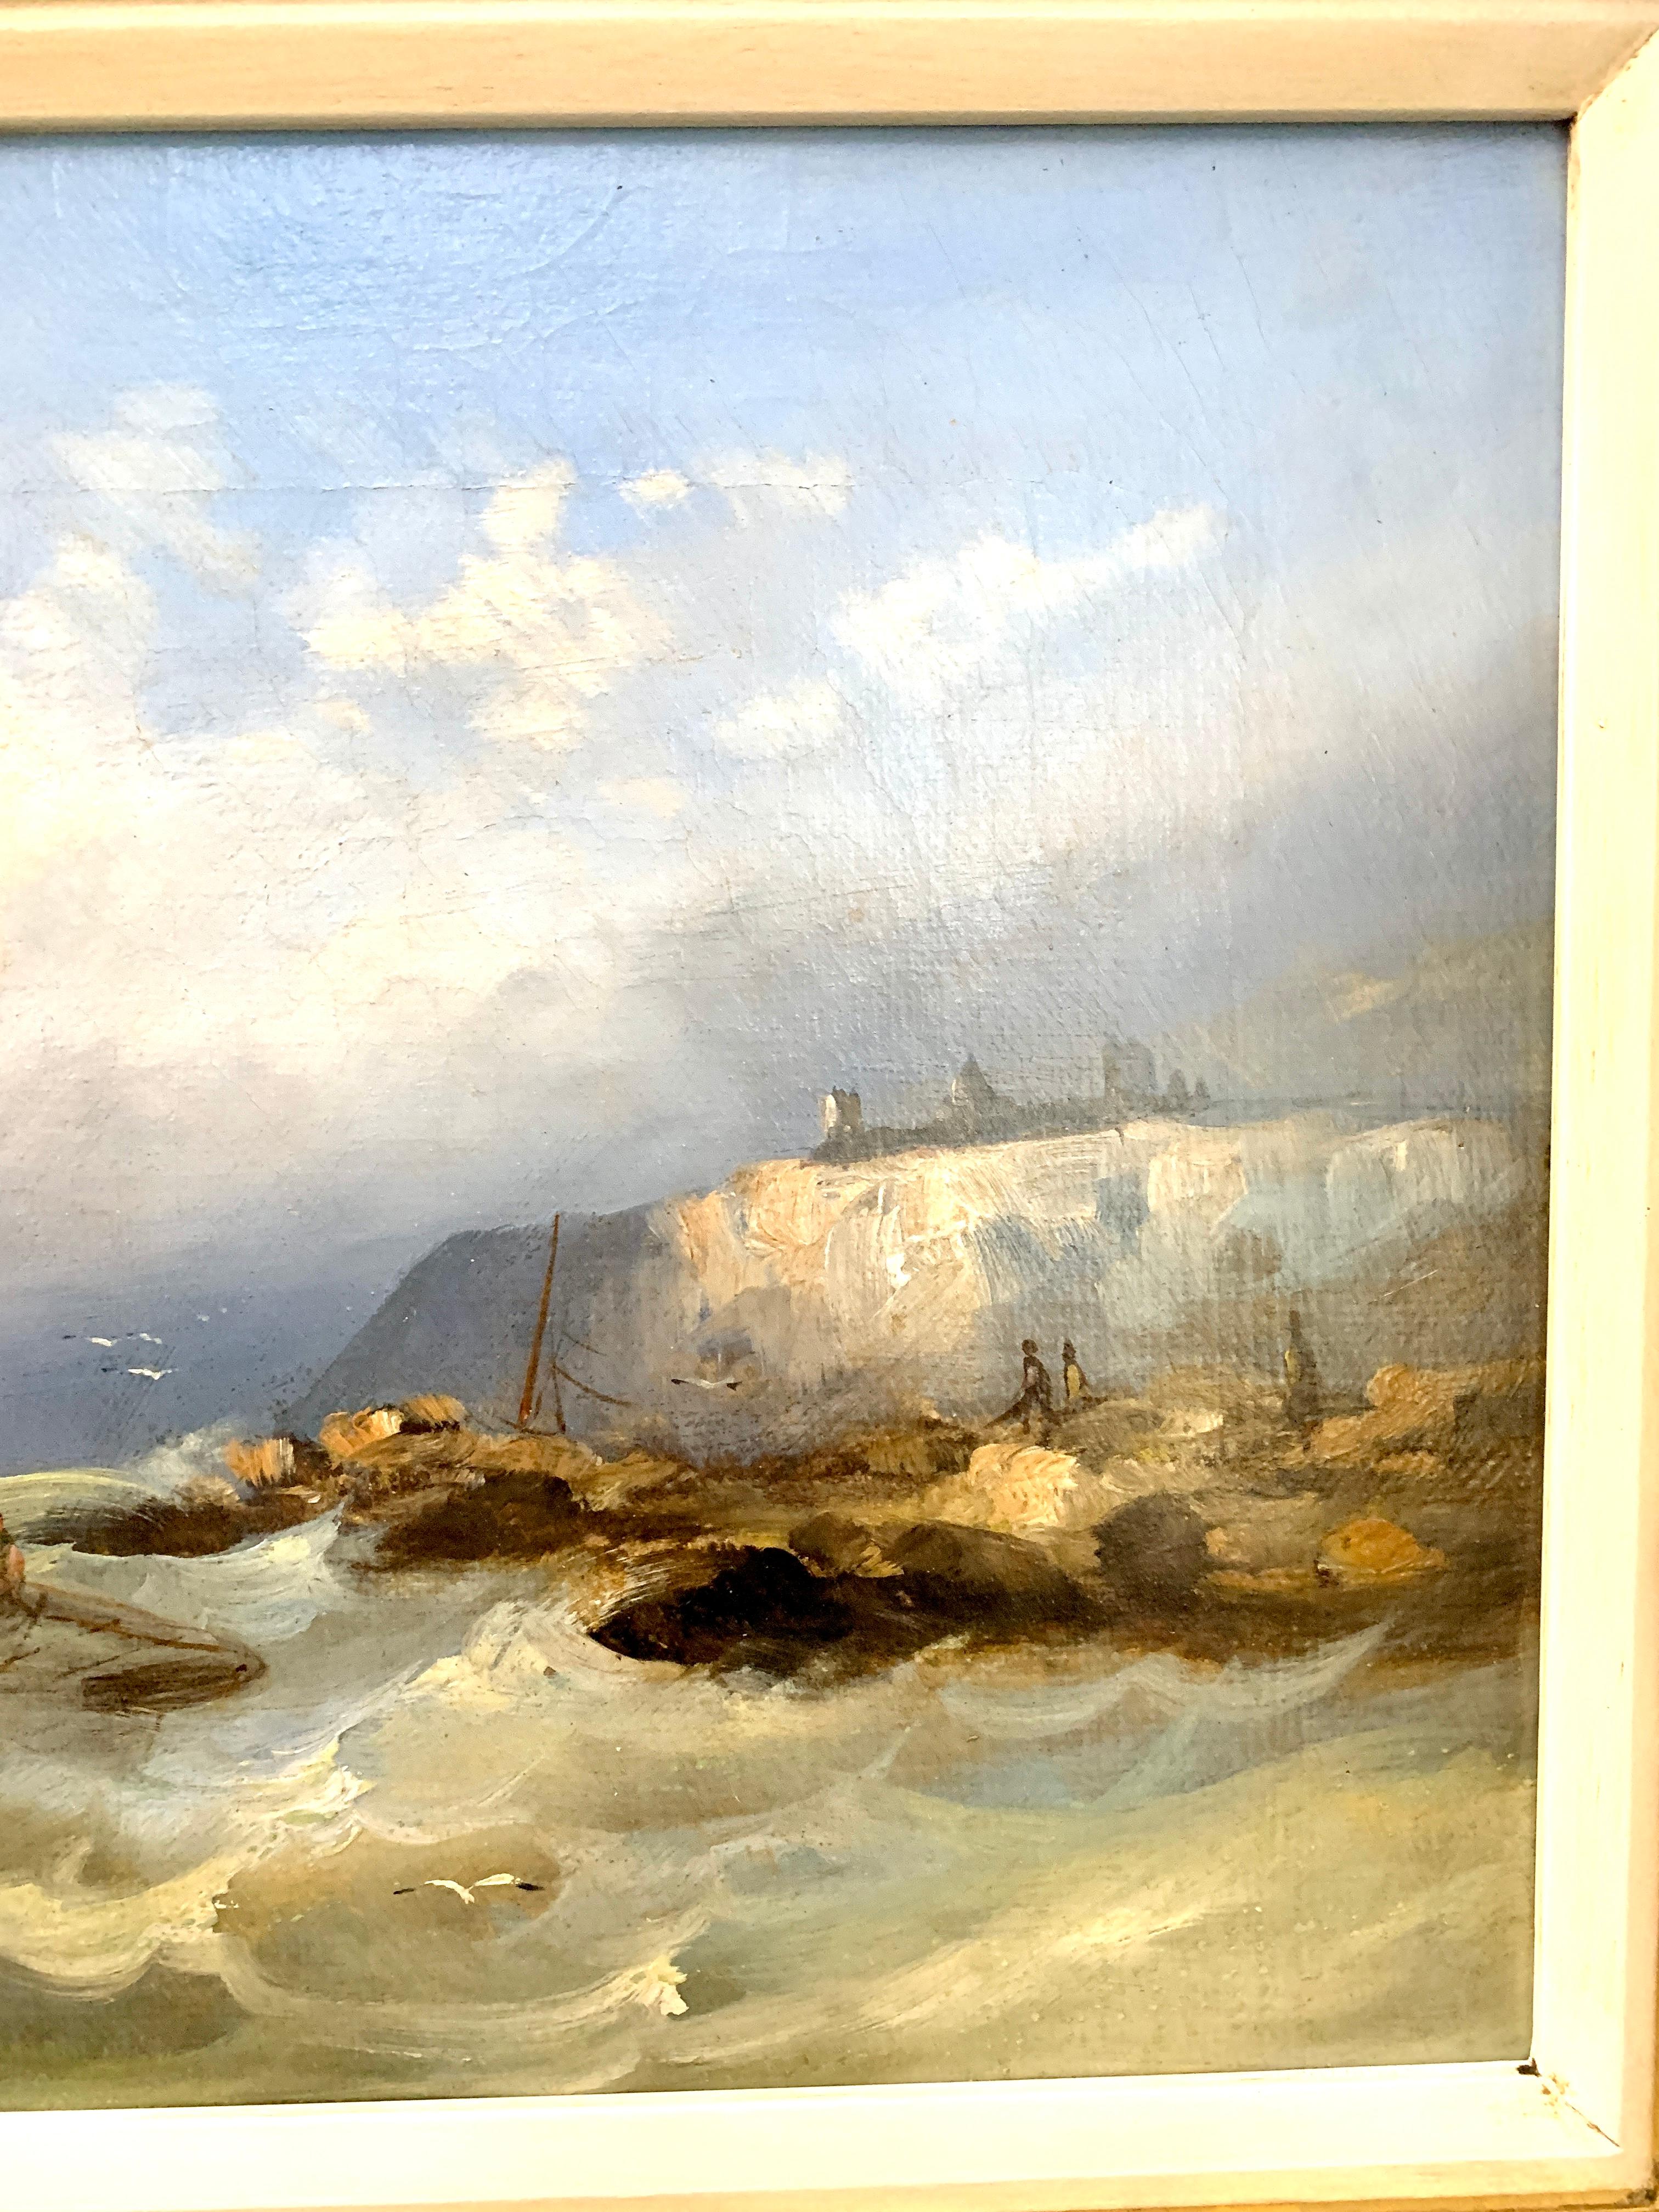 Anciennes récipients de pêche anglais du 19ème siècle dans la côte anglaise

William Henry Williamson était un peintre londonien talentueux qui a peint des scènes côtières, en particulier de la côte sud. Il a exposé à Suffolk Street, au British